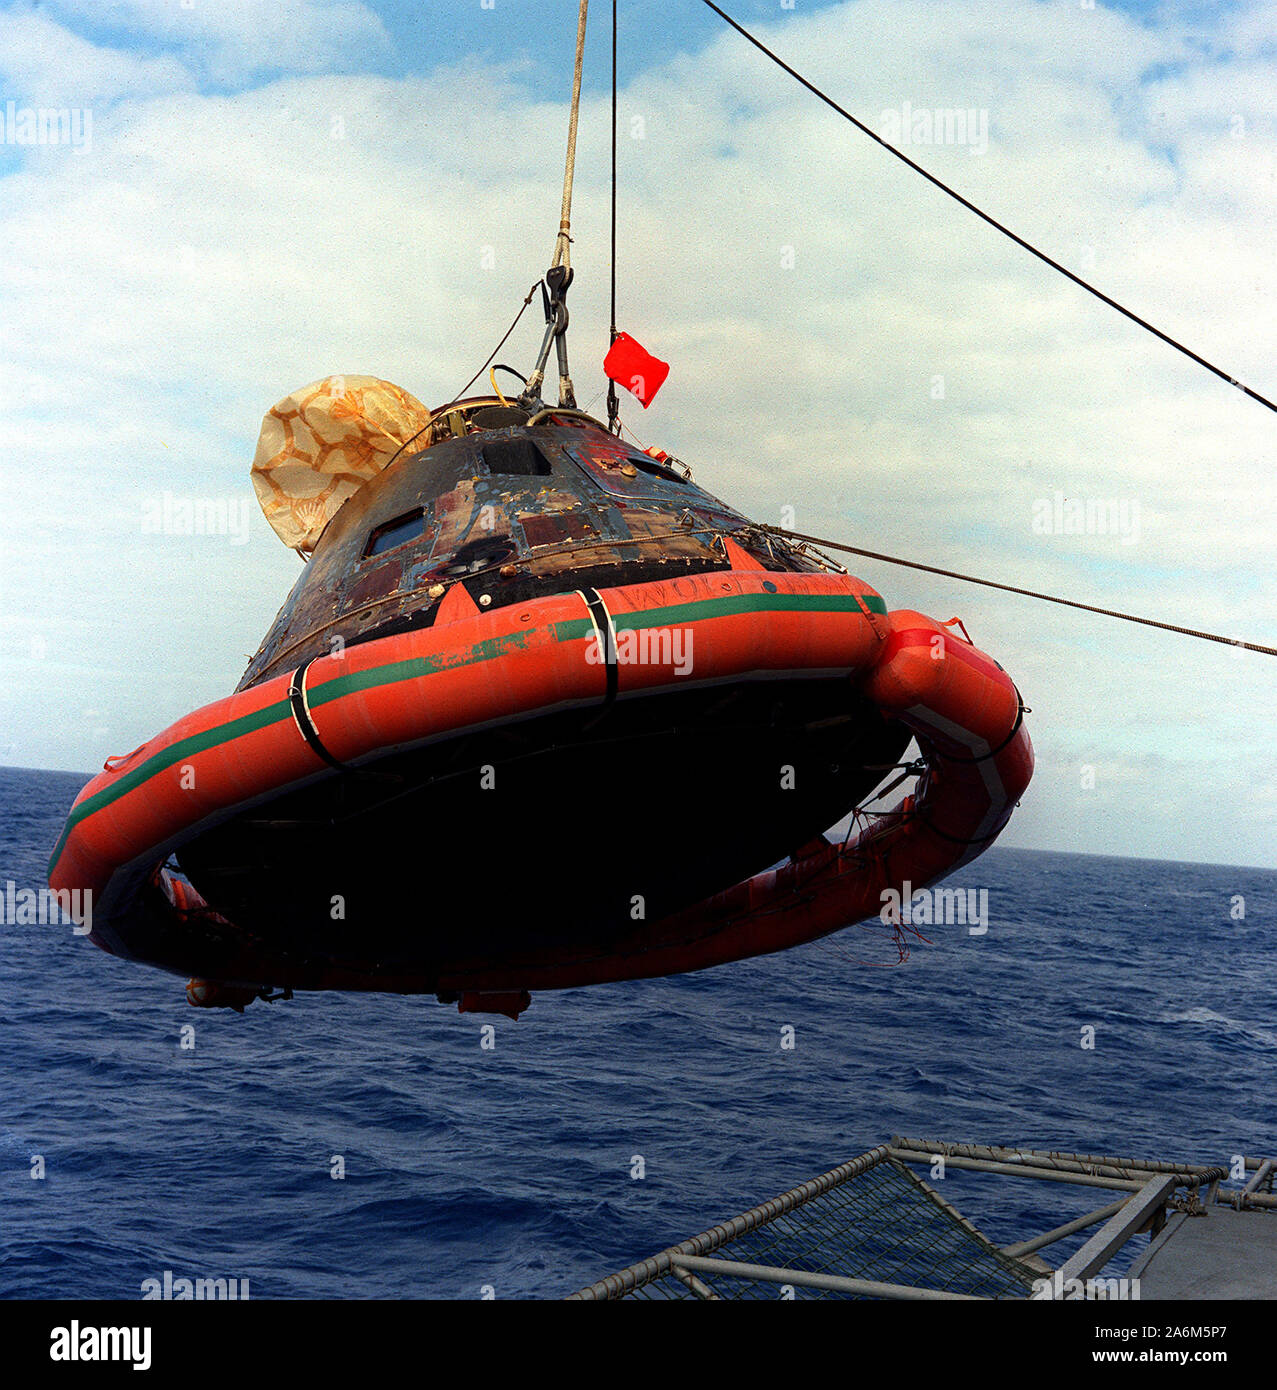 Die Apollo 11 Befehl Modul ist an Bord der USS Hornet, die Prime recovery Gefäß für den historischen Apollo 11 Mondlandung mission gehisst. Die Wasserung erfolgte um 12:49 Uhr ET, 24. Juli 1969, über 812 Seemeilen südwestlich von Hawaii, nur 12 Seemeilen von der USS Hornet. Stockfoto